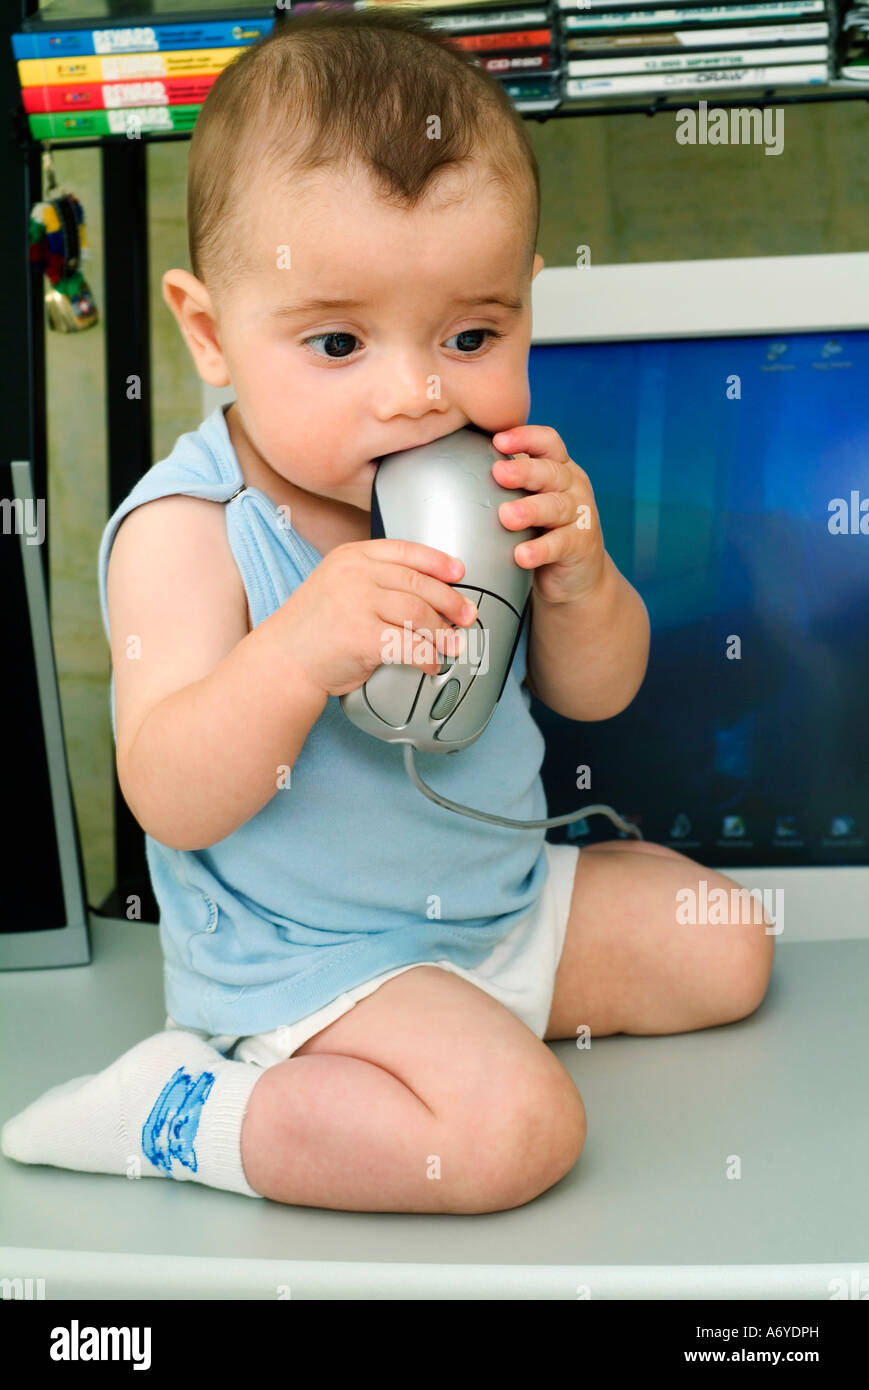 Baby Boy setzen Computer-Maus in den Mund Stockfoto